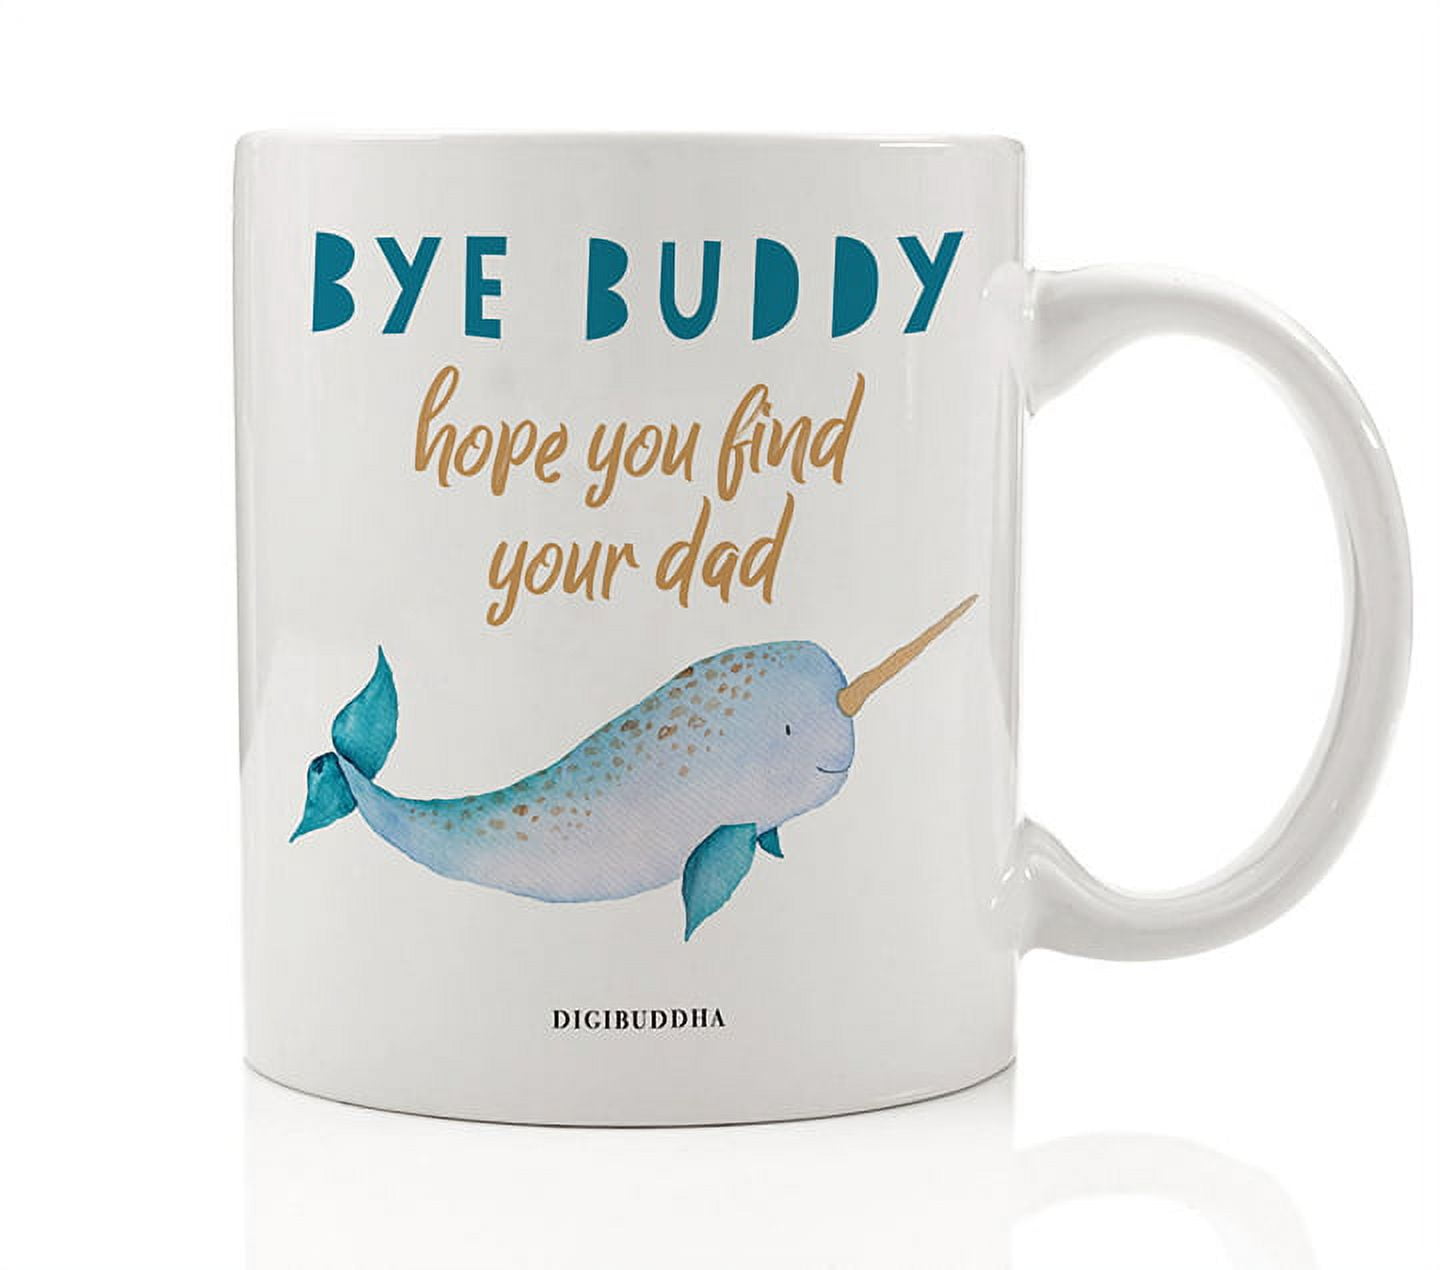 Bye Buddy Hope You Find Your Dad Mug - Buddy The Elf Mug - HighCiti